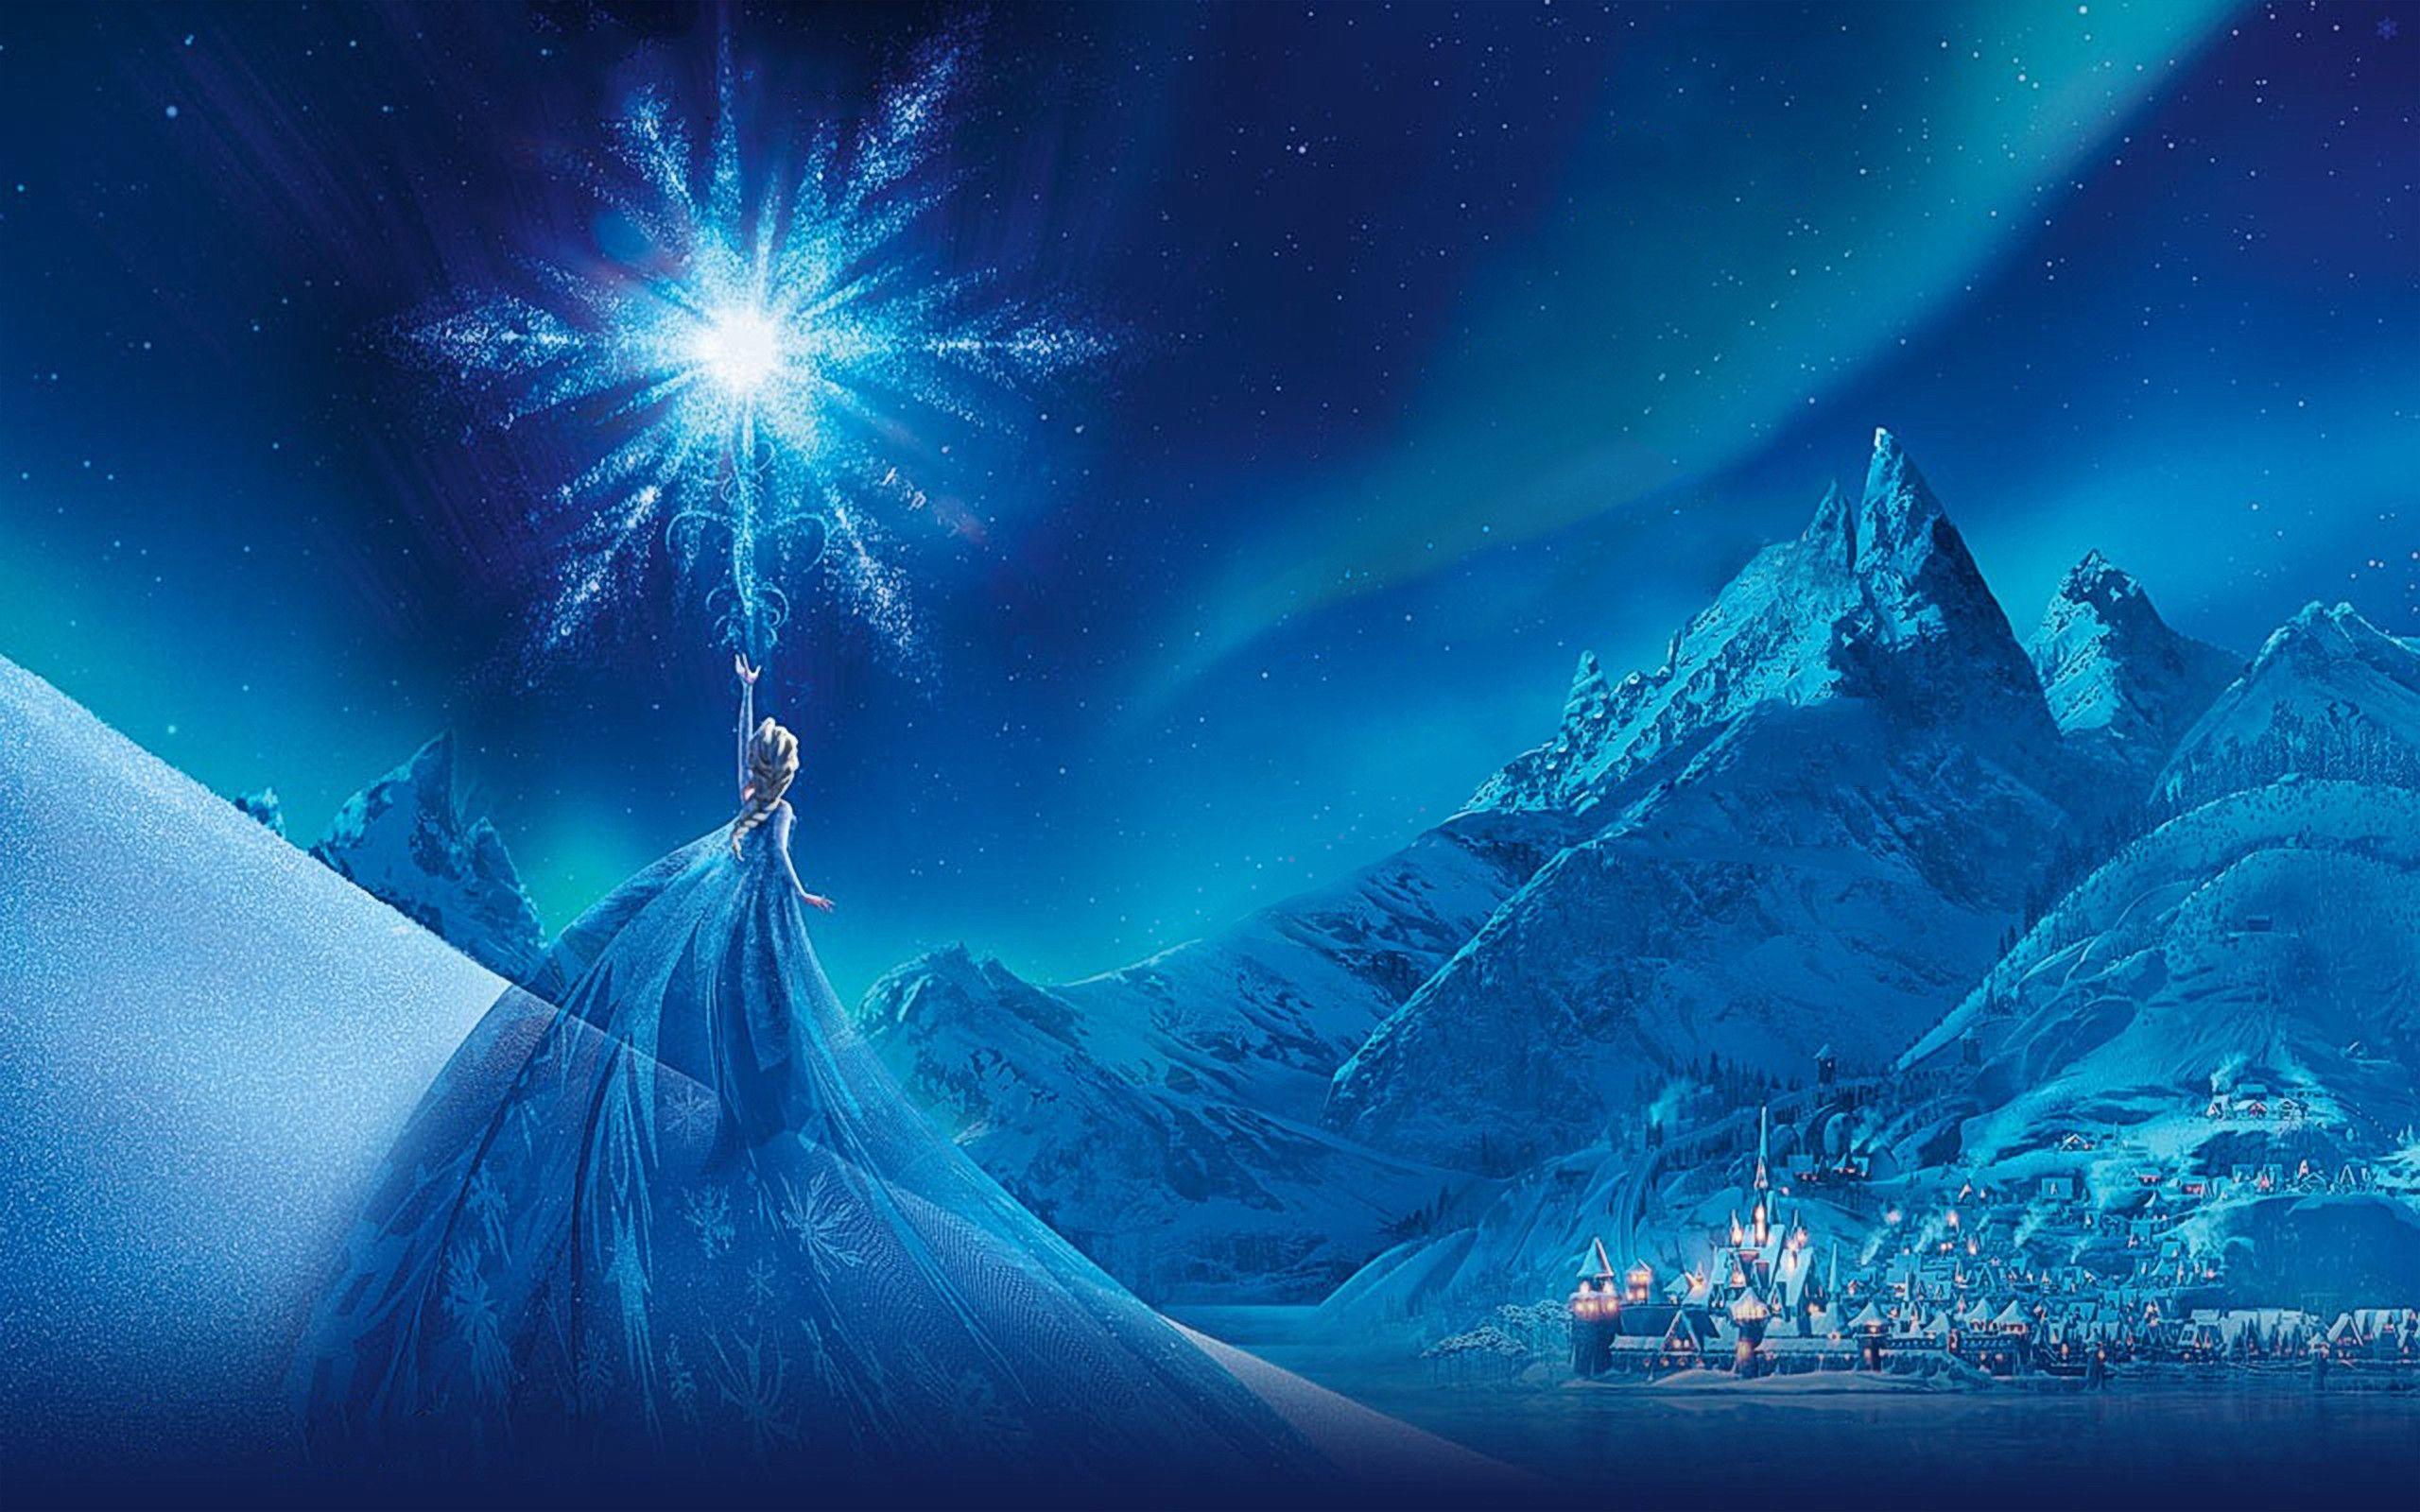 Movie Frozen Elsa (Frozen) Frozen (Movie) Snow Arendelle Wallpaper. Frozen wallpaper, Frozen image, Frozen background